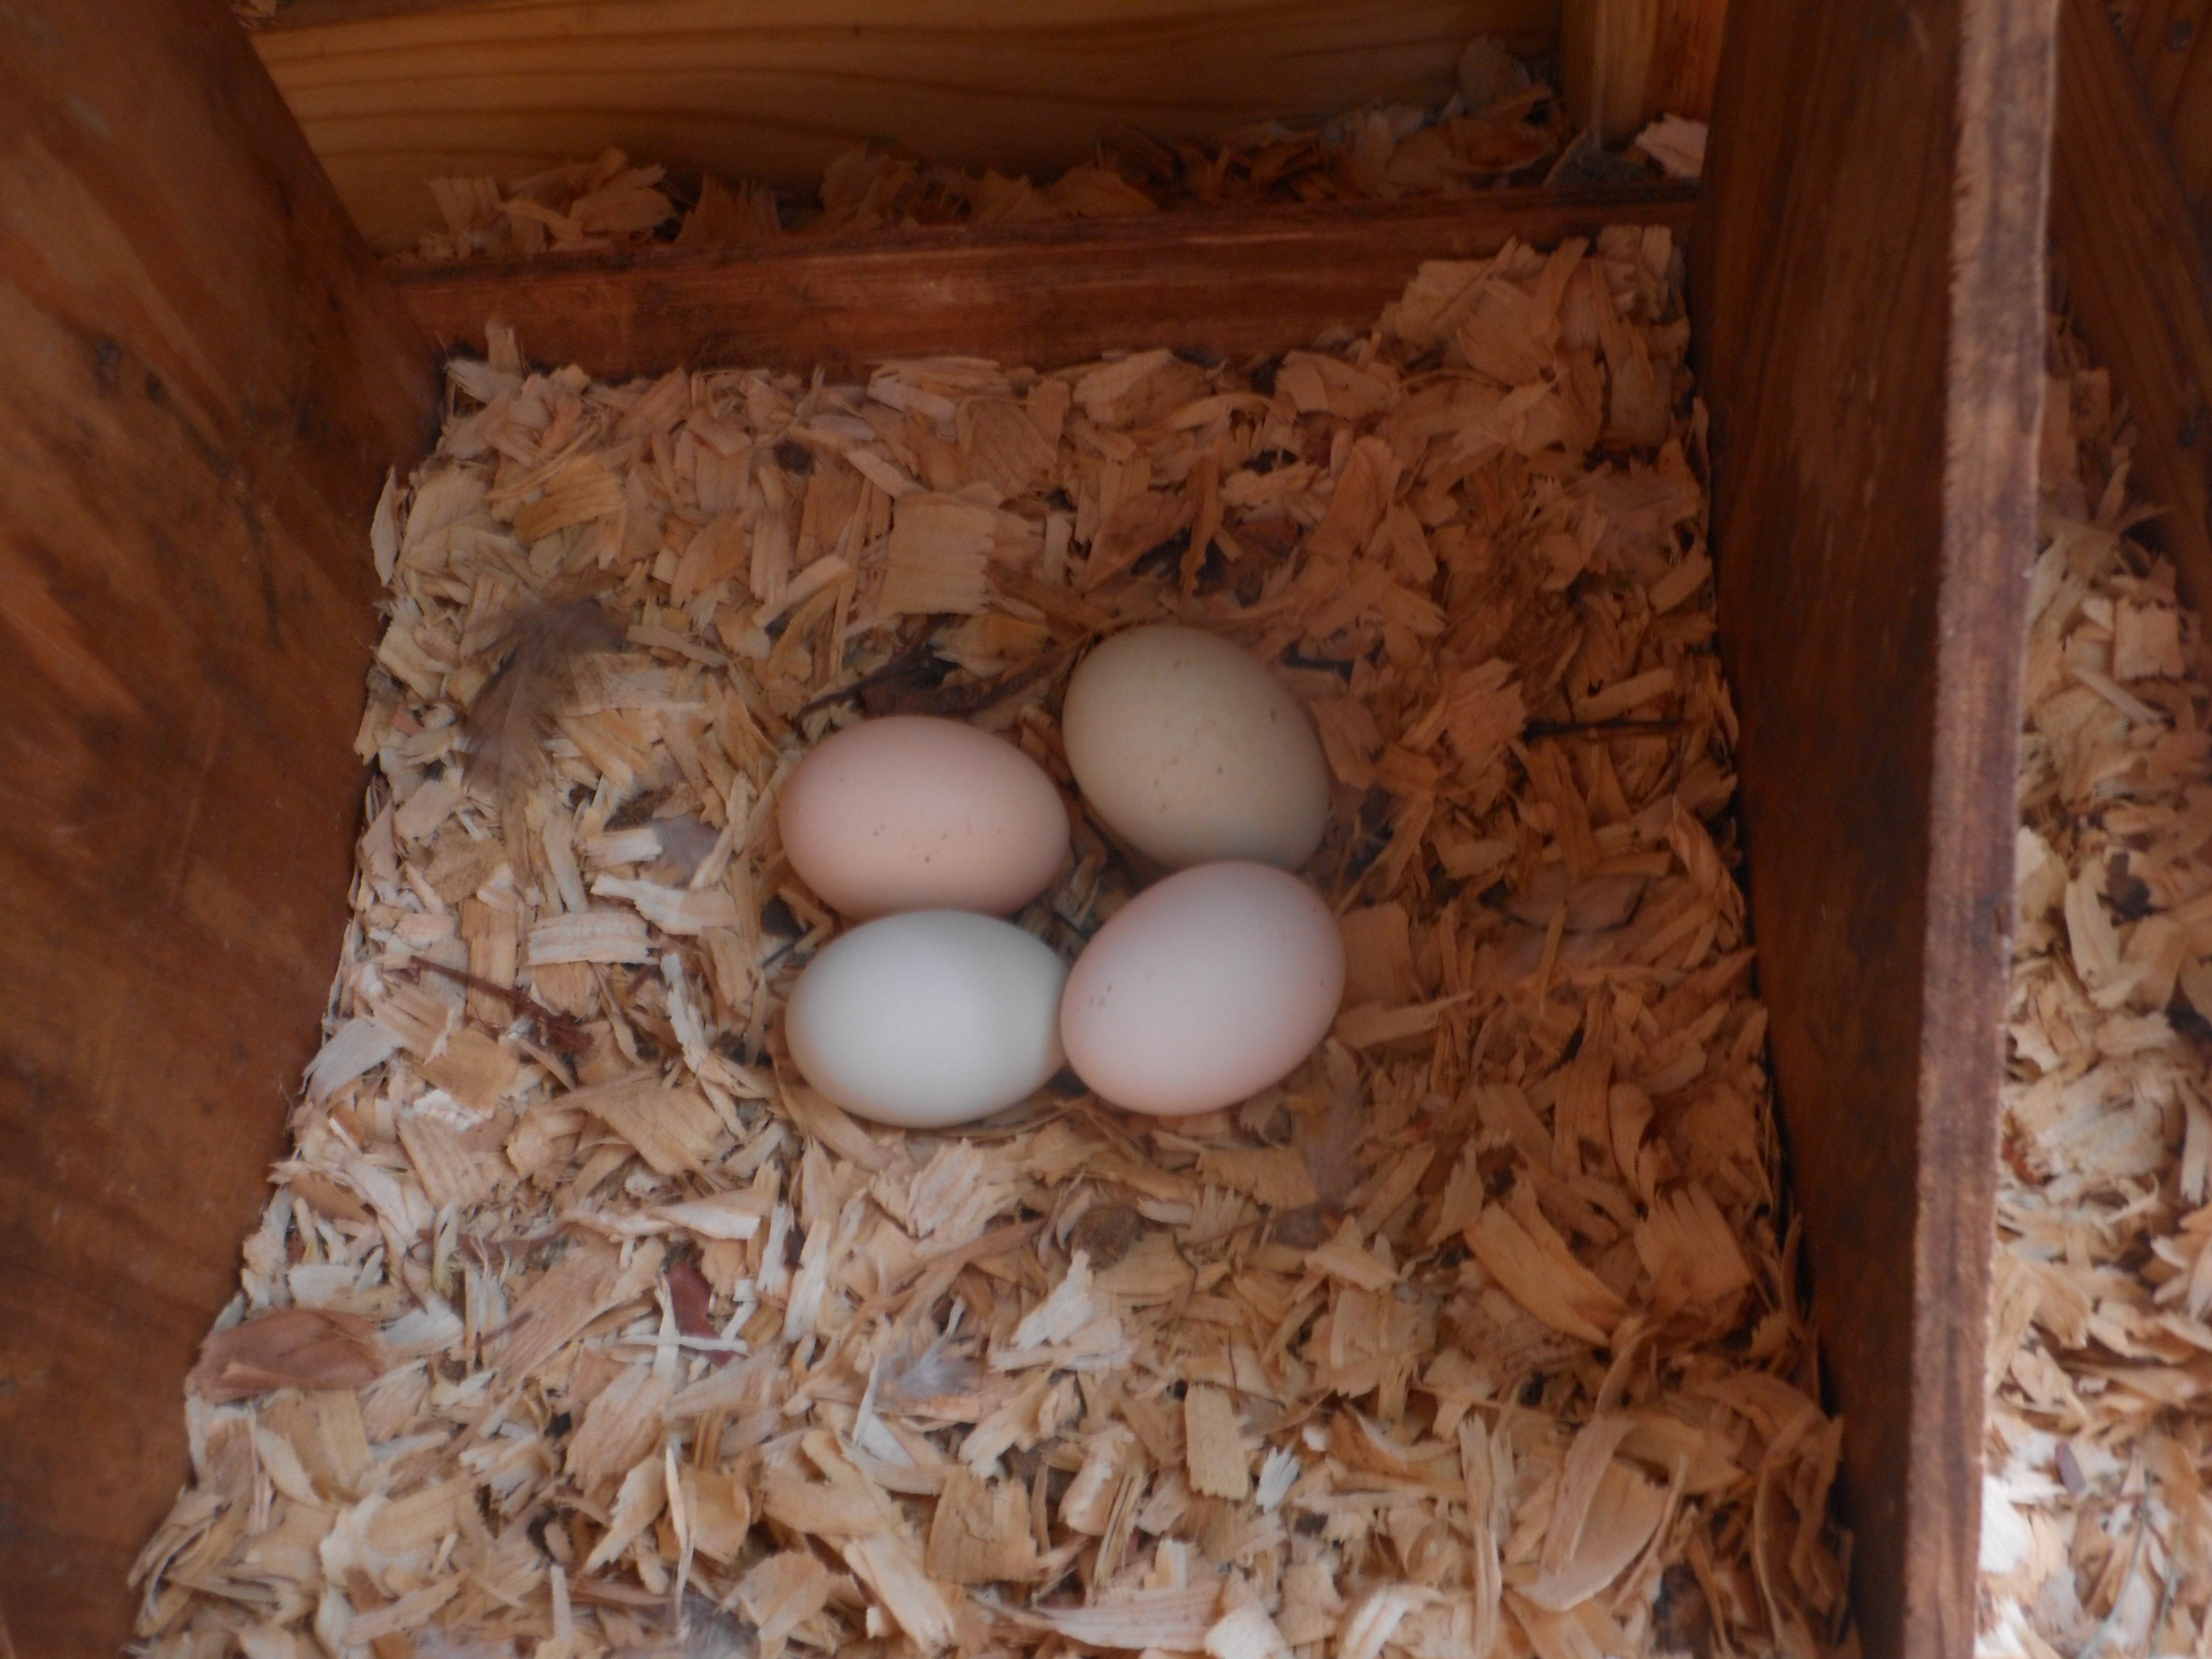 Eggs from Jill, Iris, Lanna and Bonnie